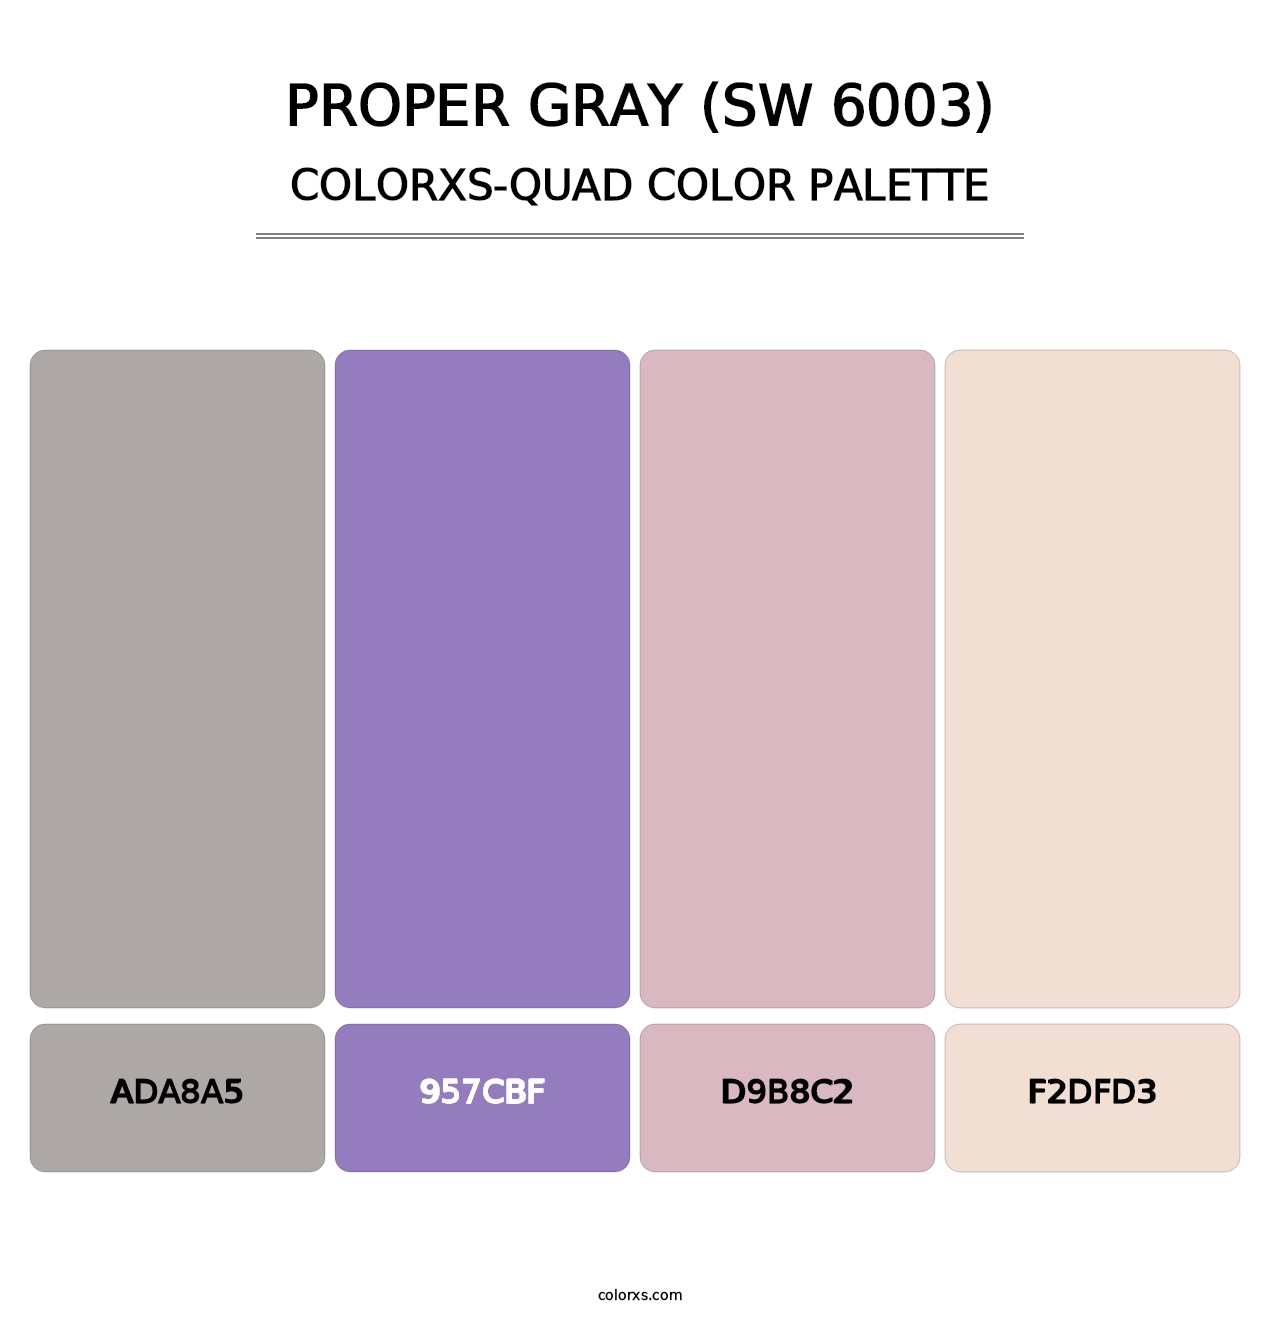 Proper Gray (SW 6003) - Colorxs Quad Palette